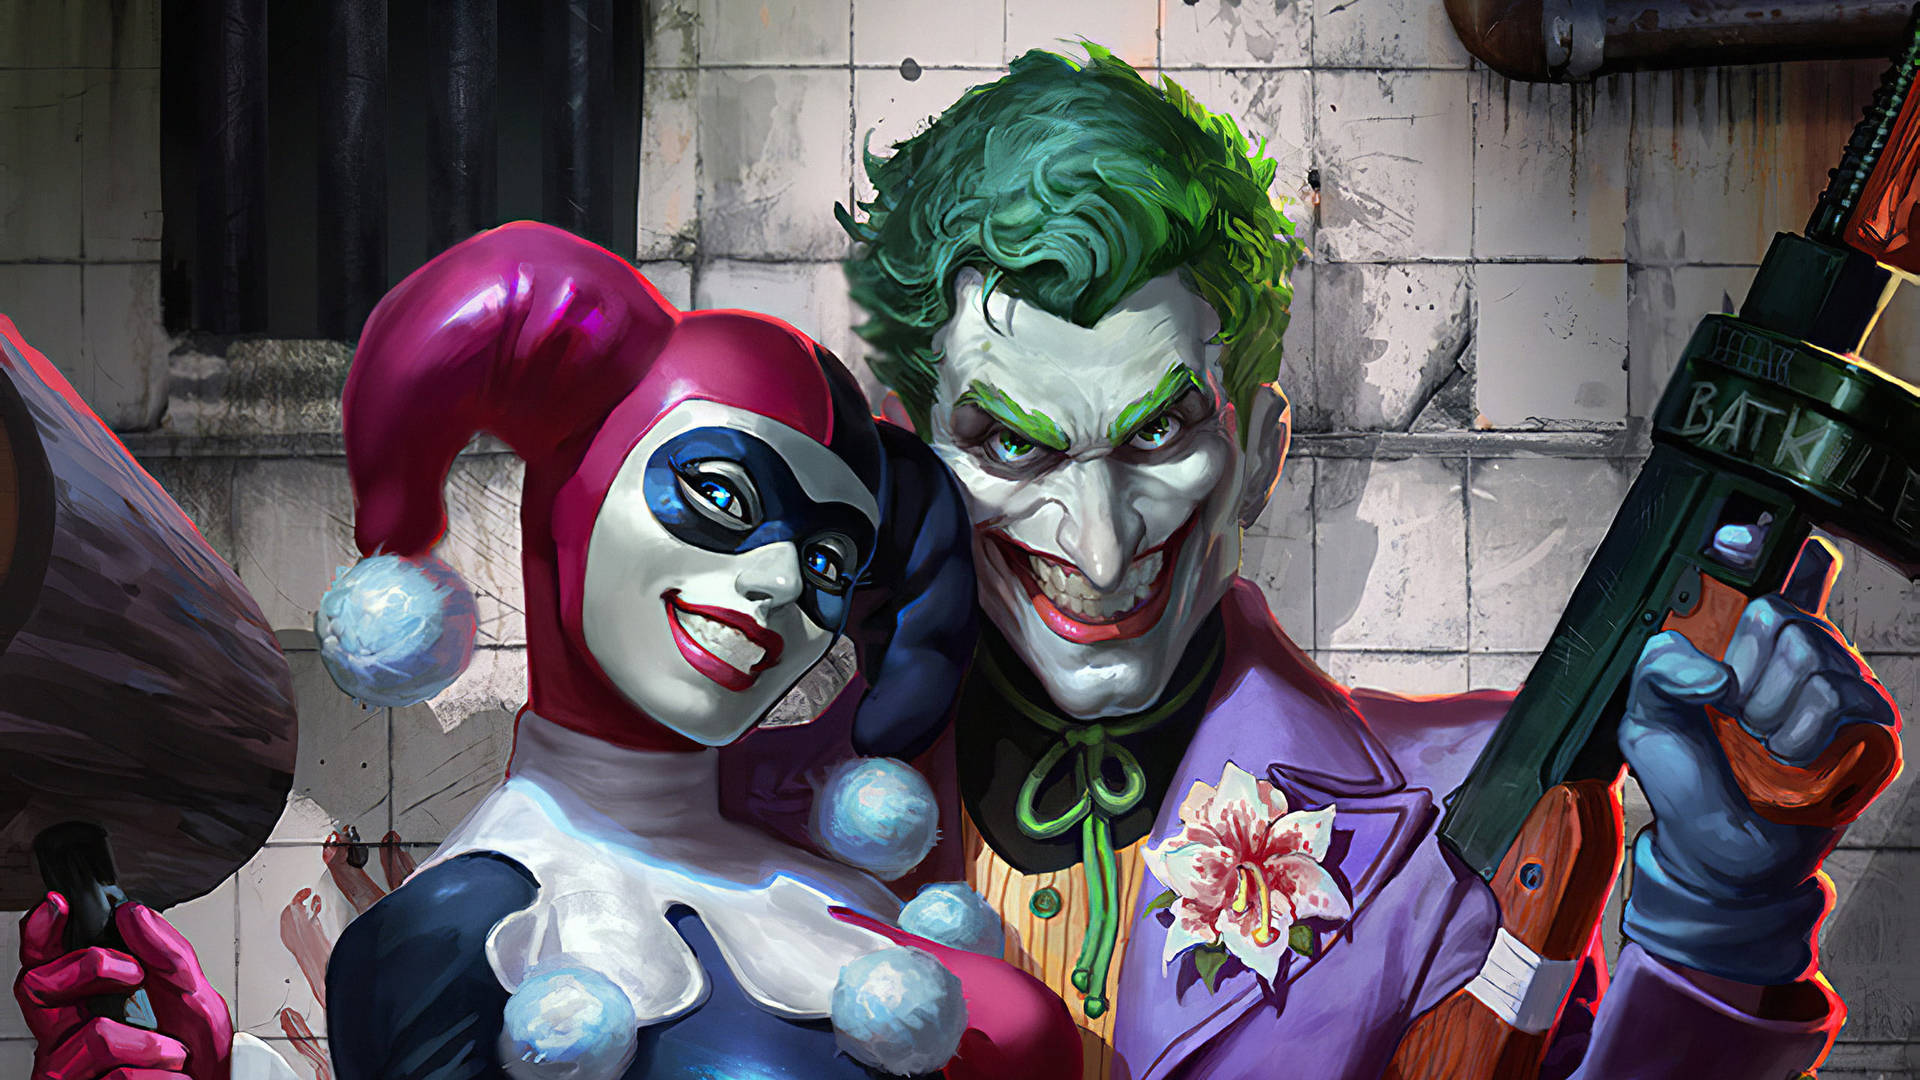 Fondos De Joker Y Harley Quinn